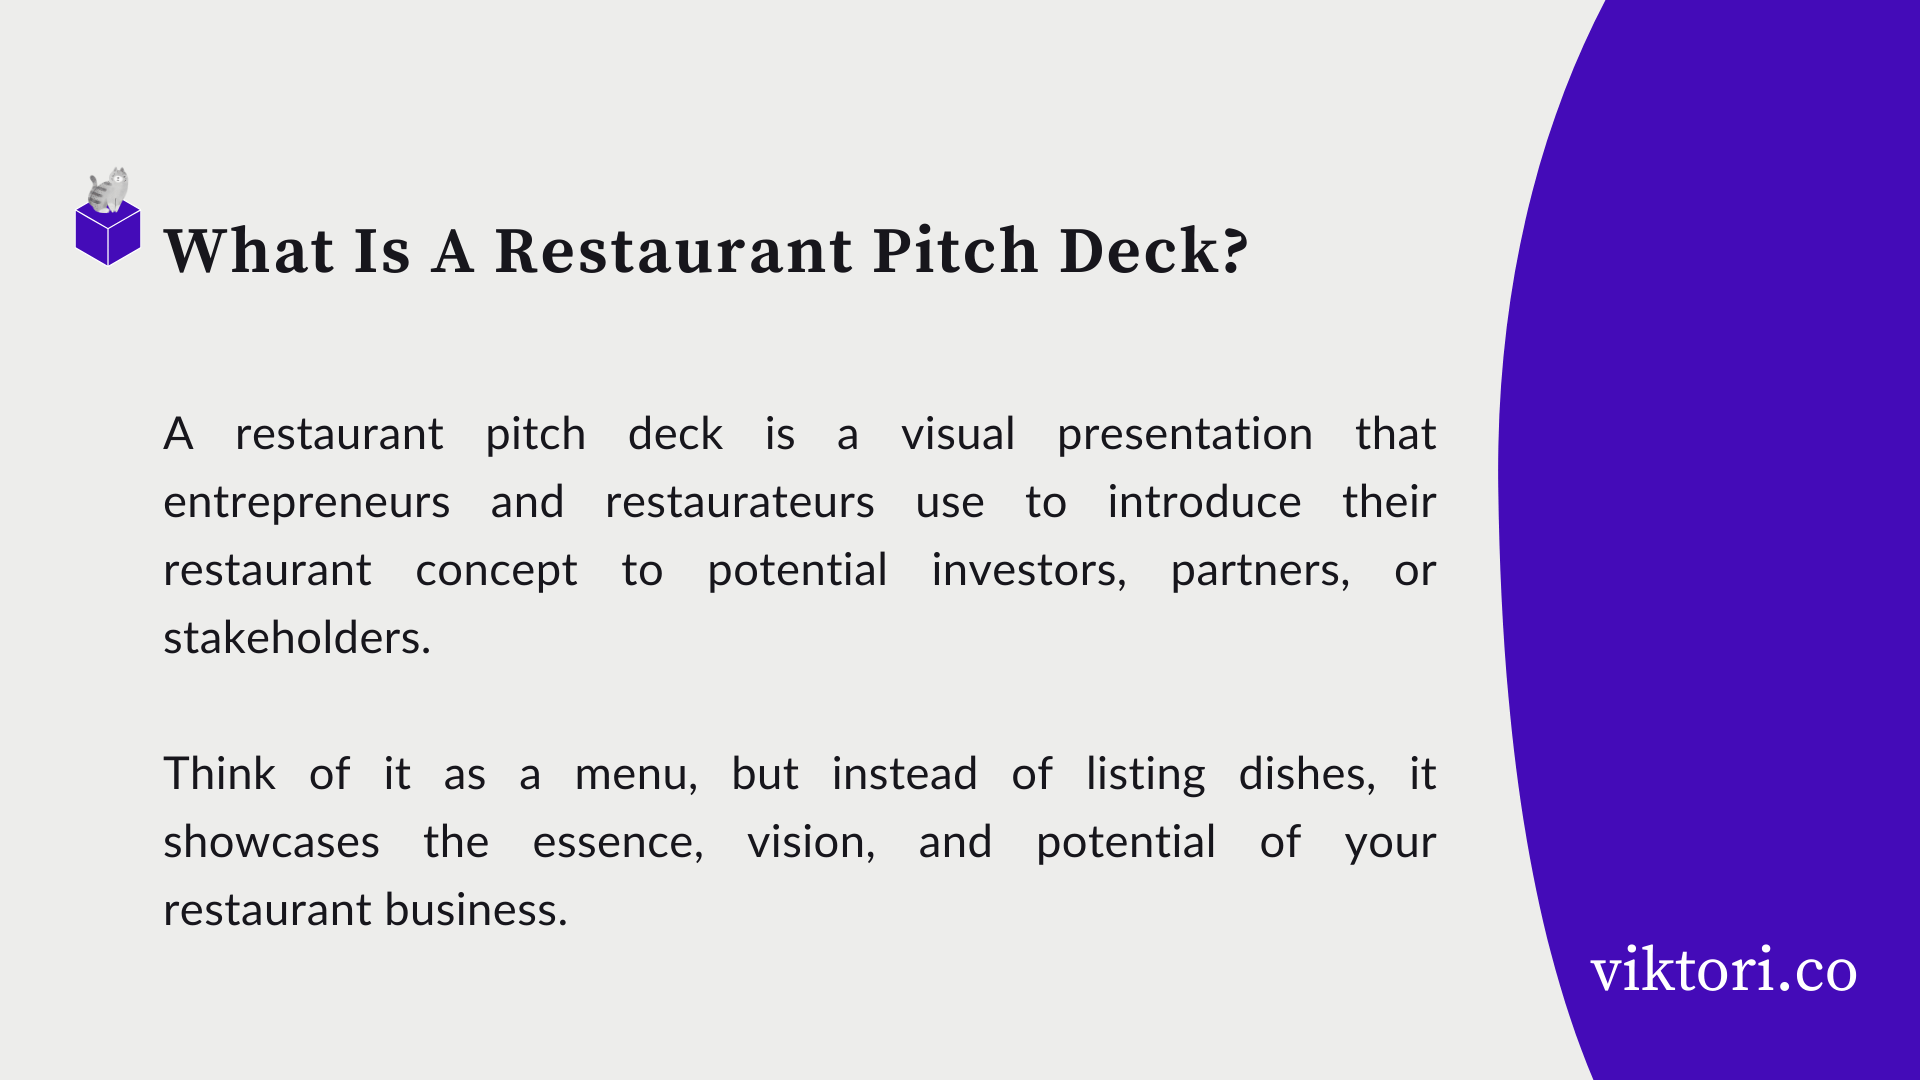 restaurant pitch deck definition